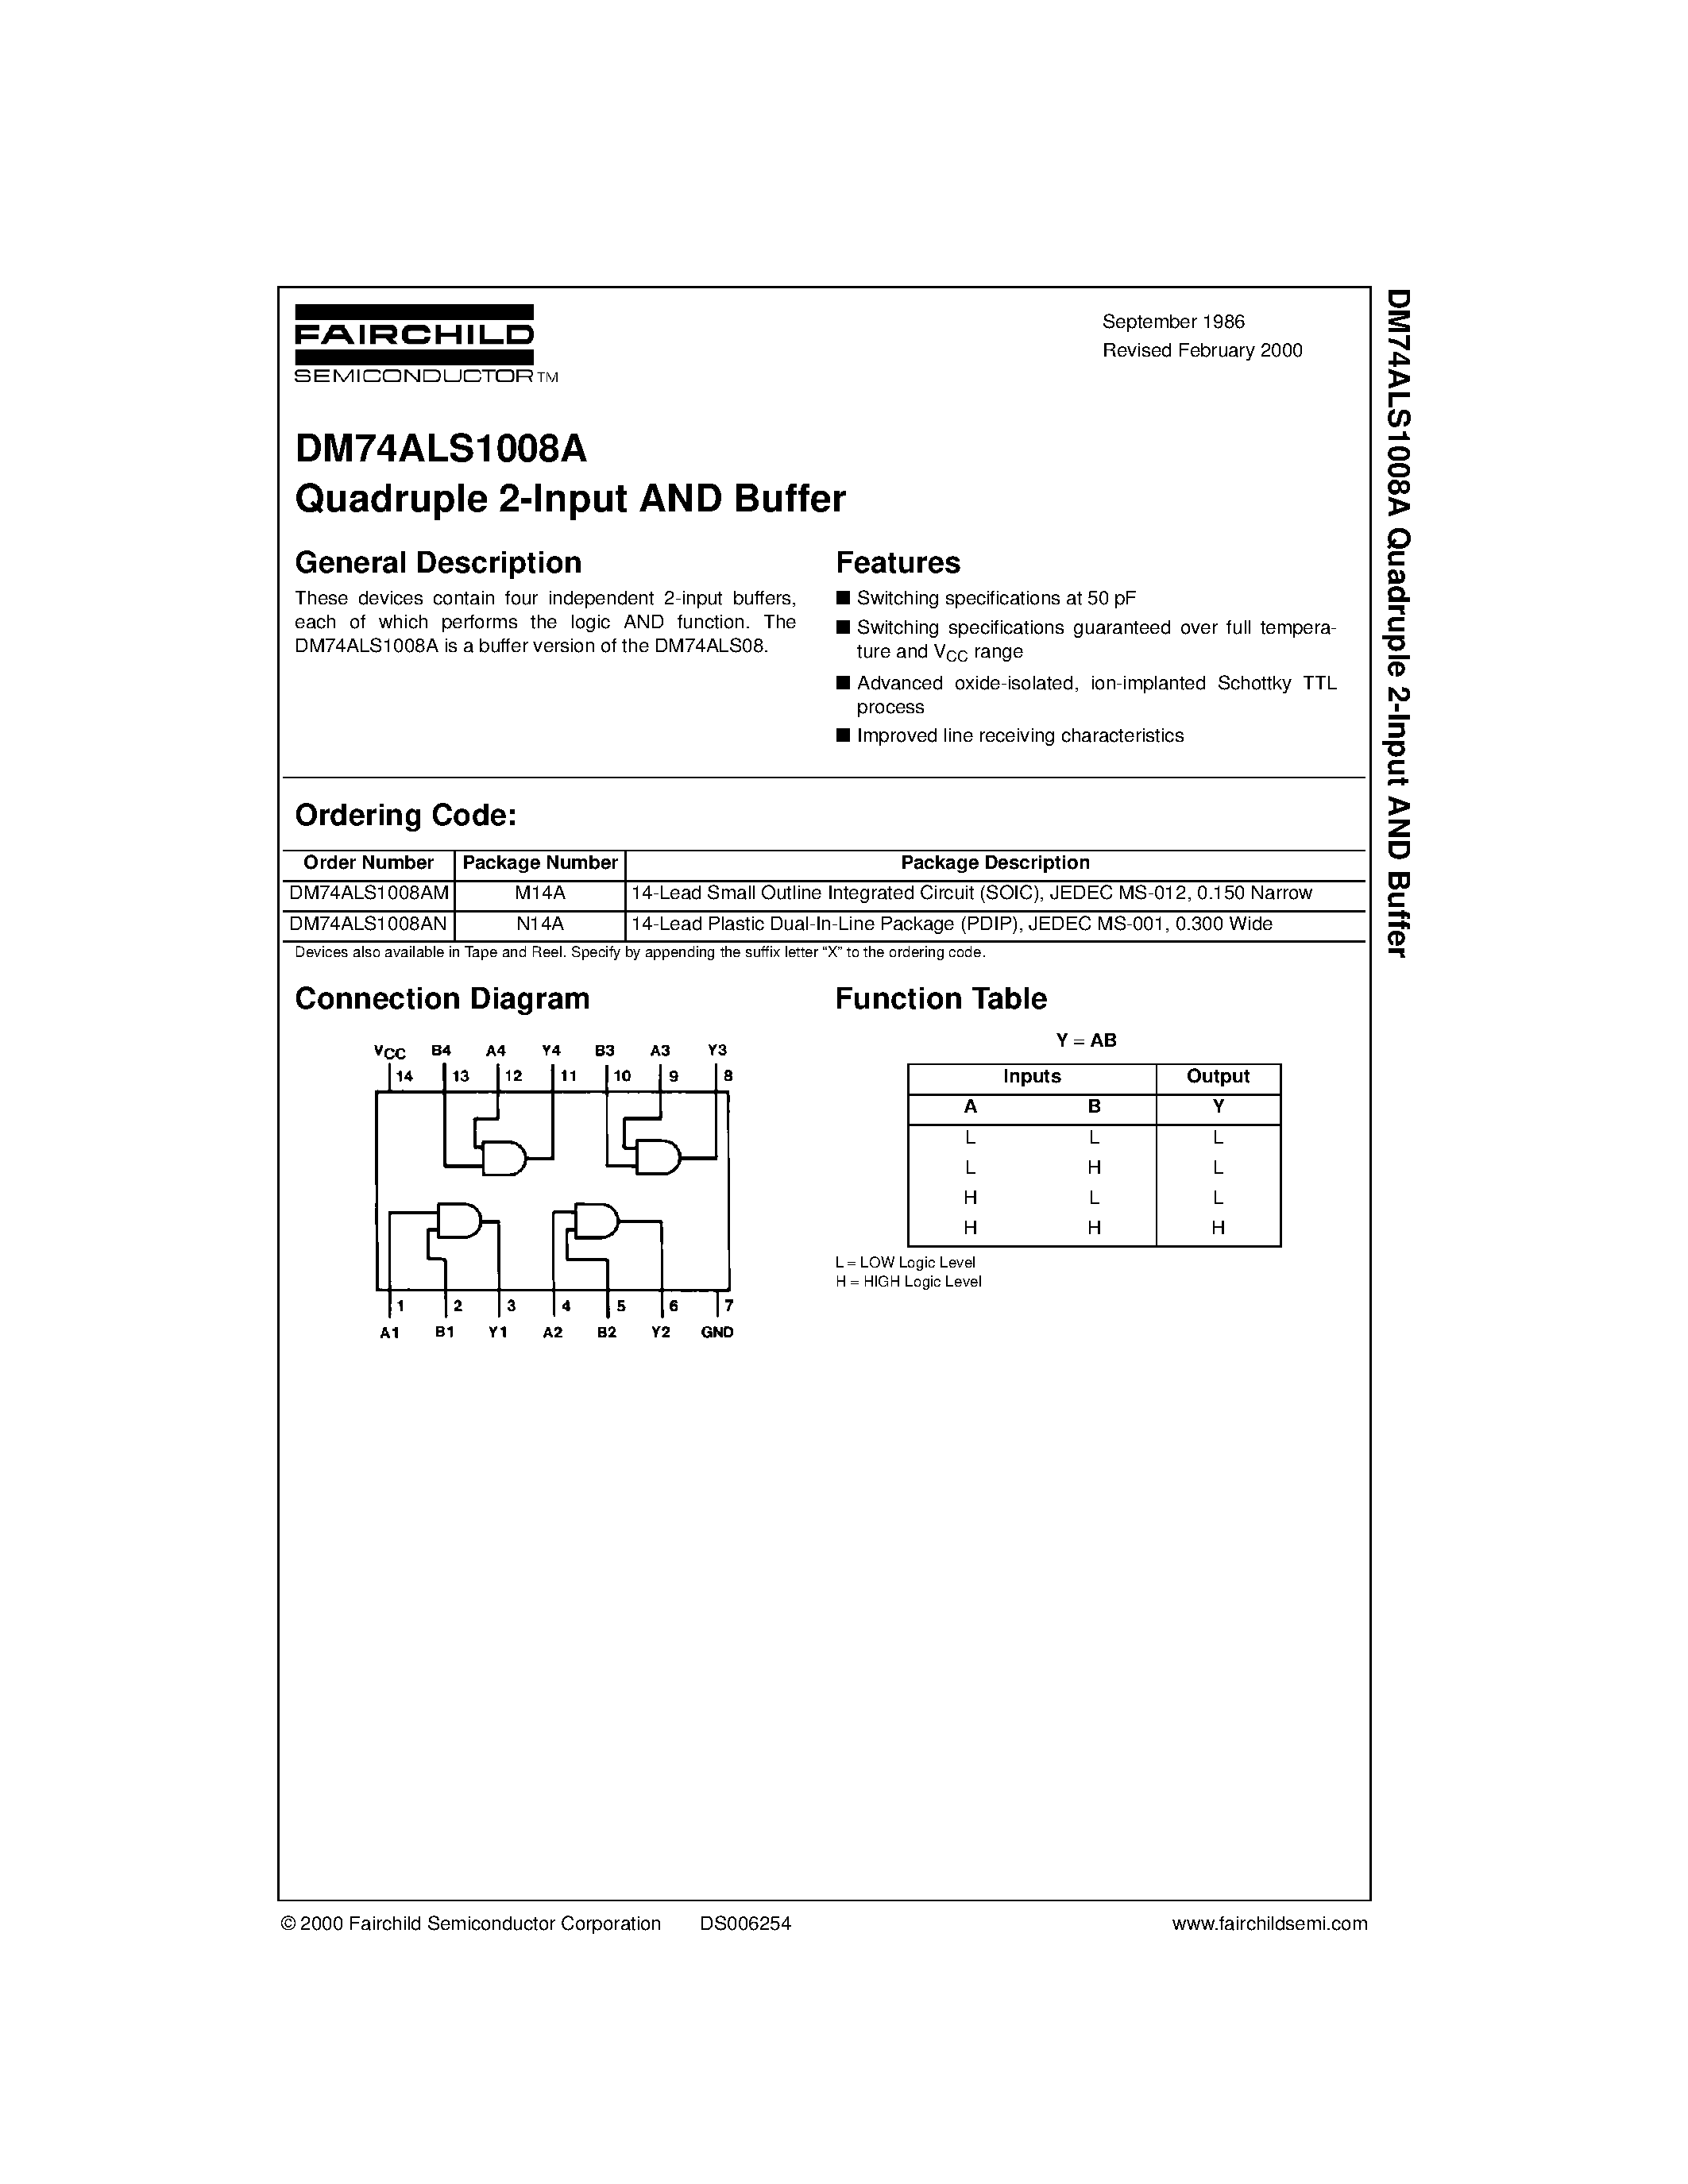 Datasheet DM74ALS1008A - Quadruple 2-Input AND Buffer page 1